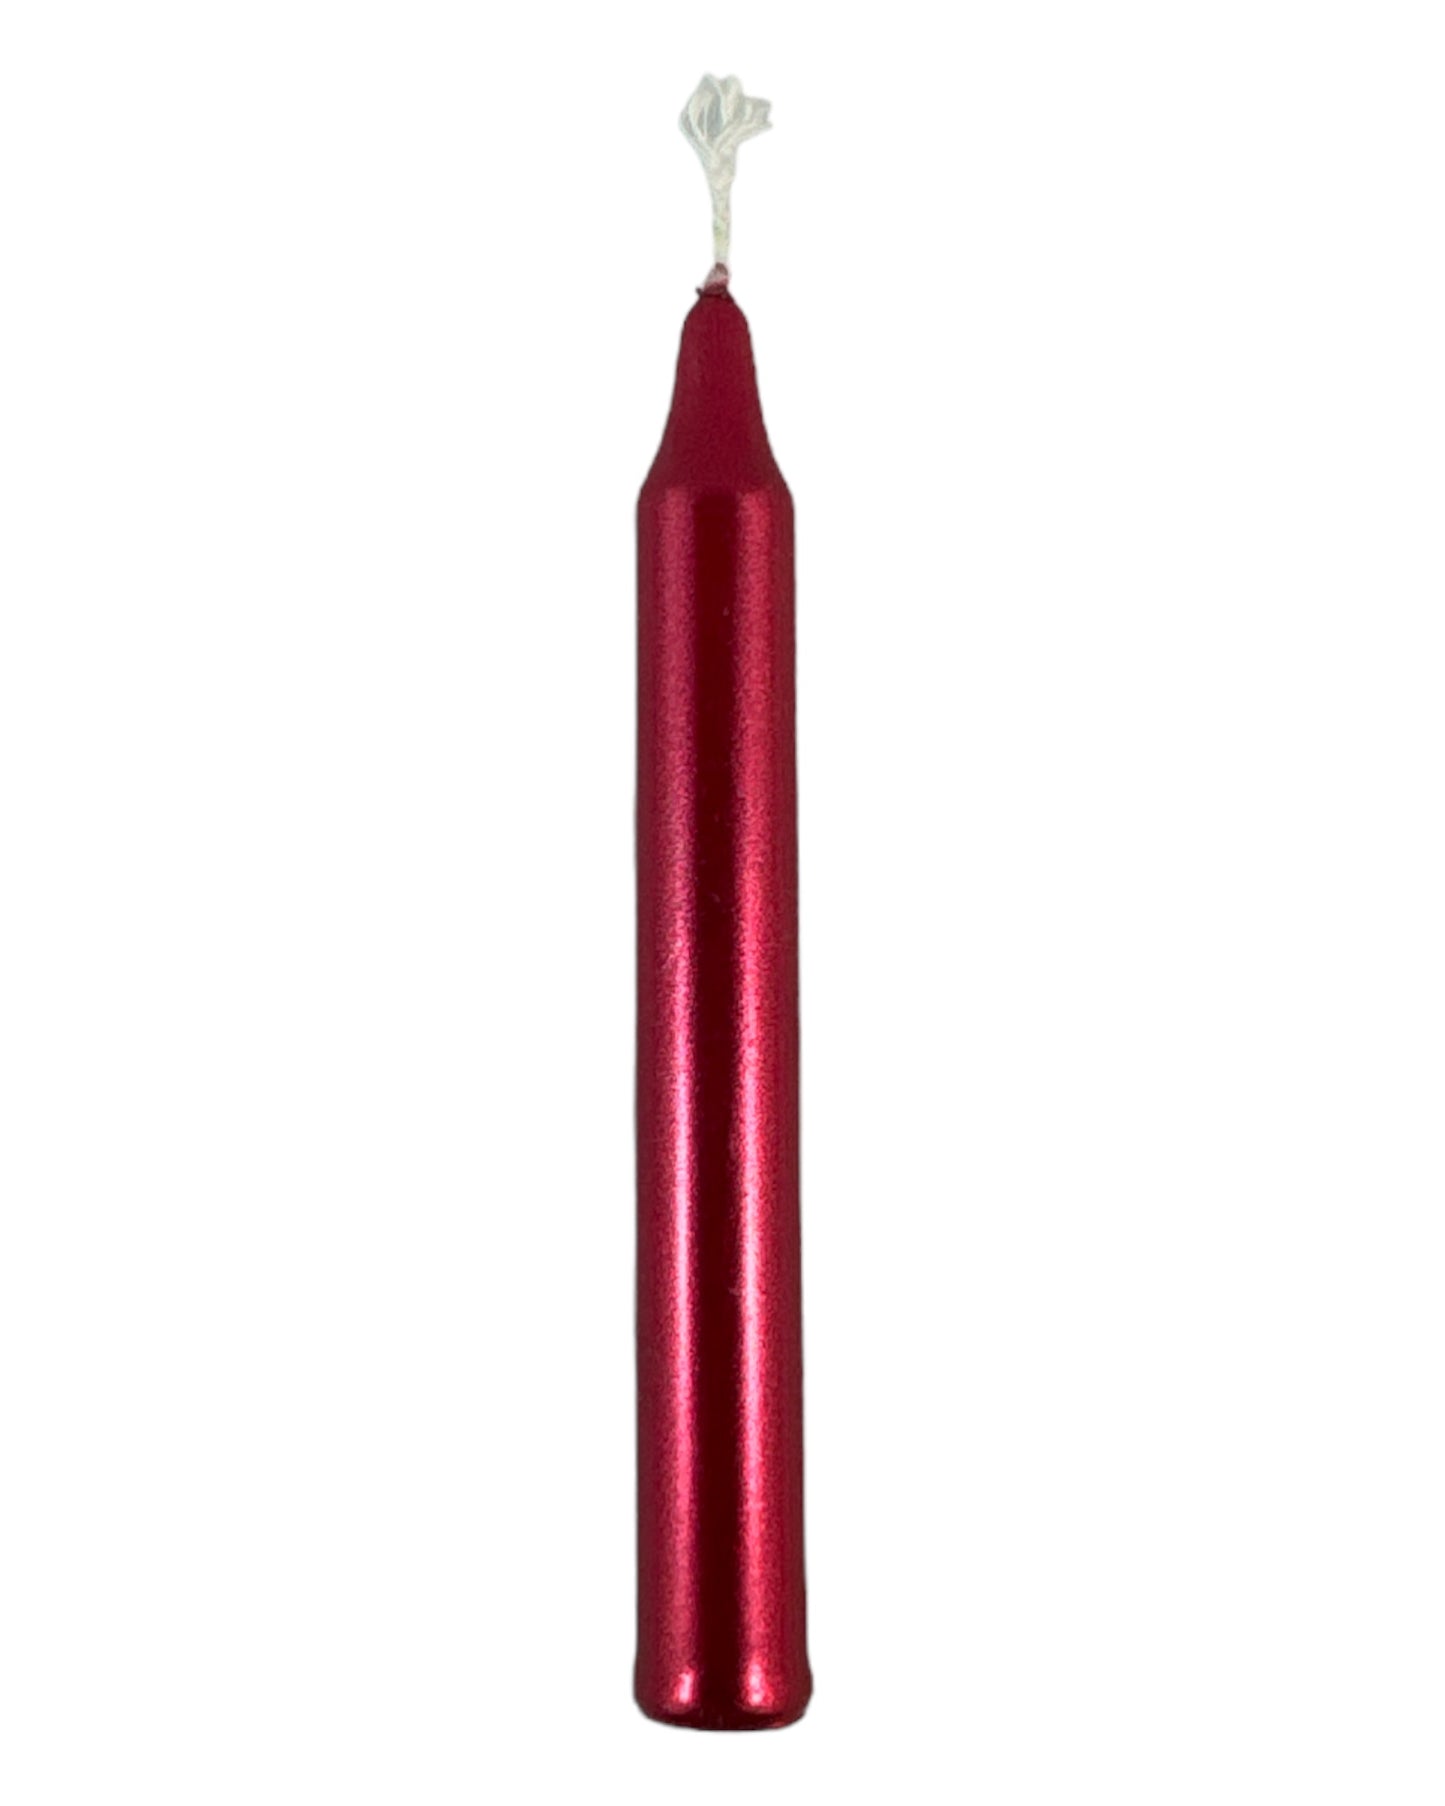 Metallic Red mini candle